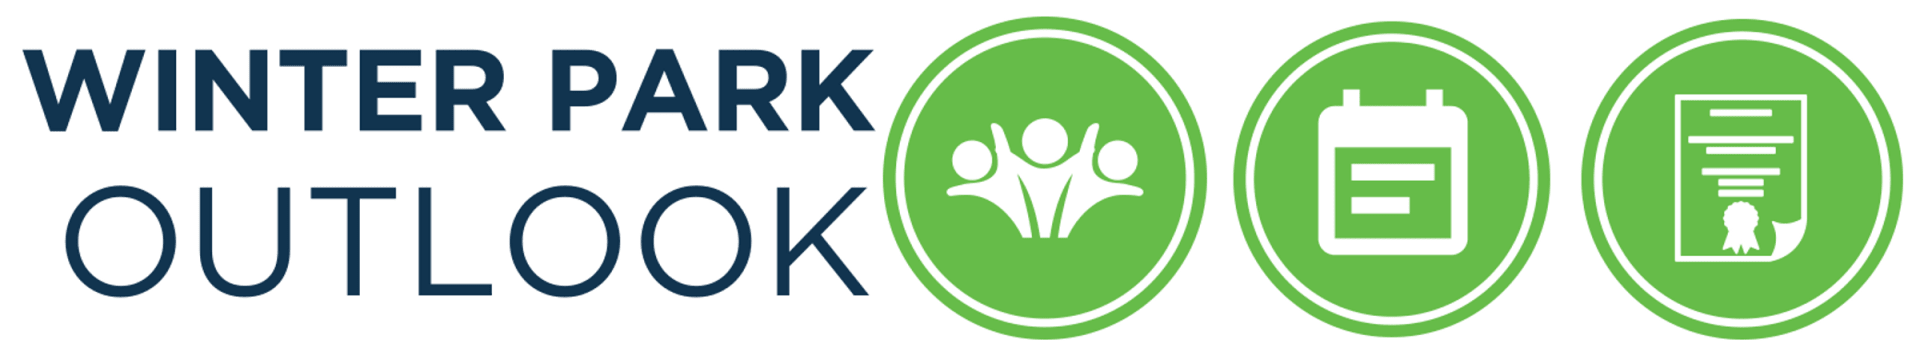 Outlook Logo - Winter Park Outlook - Winter Park Chamber of Commerce, FL